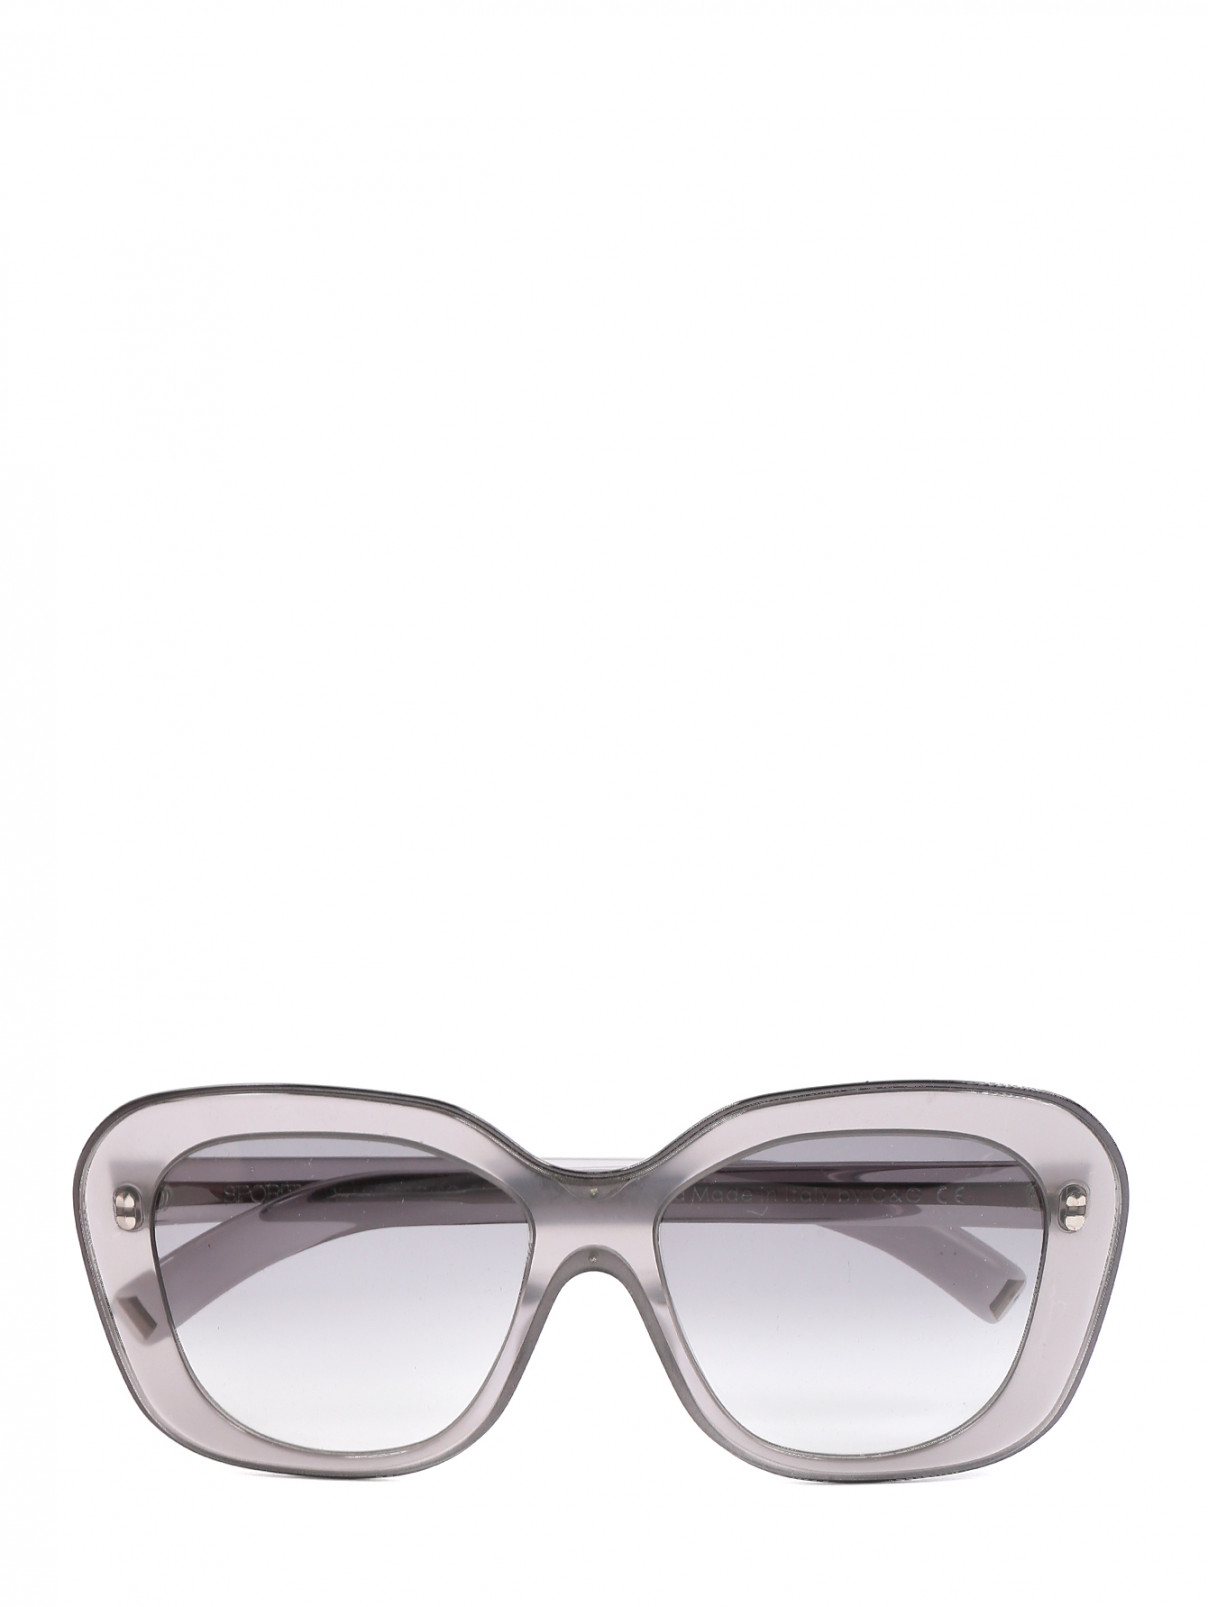 Солнцезащитные очки в оправе из пластика Max Mara  –  Общий вид  – Цвет:  Серый